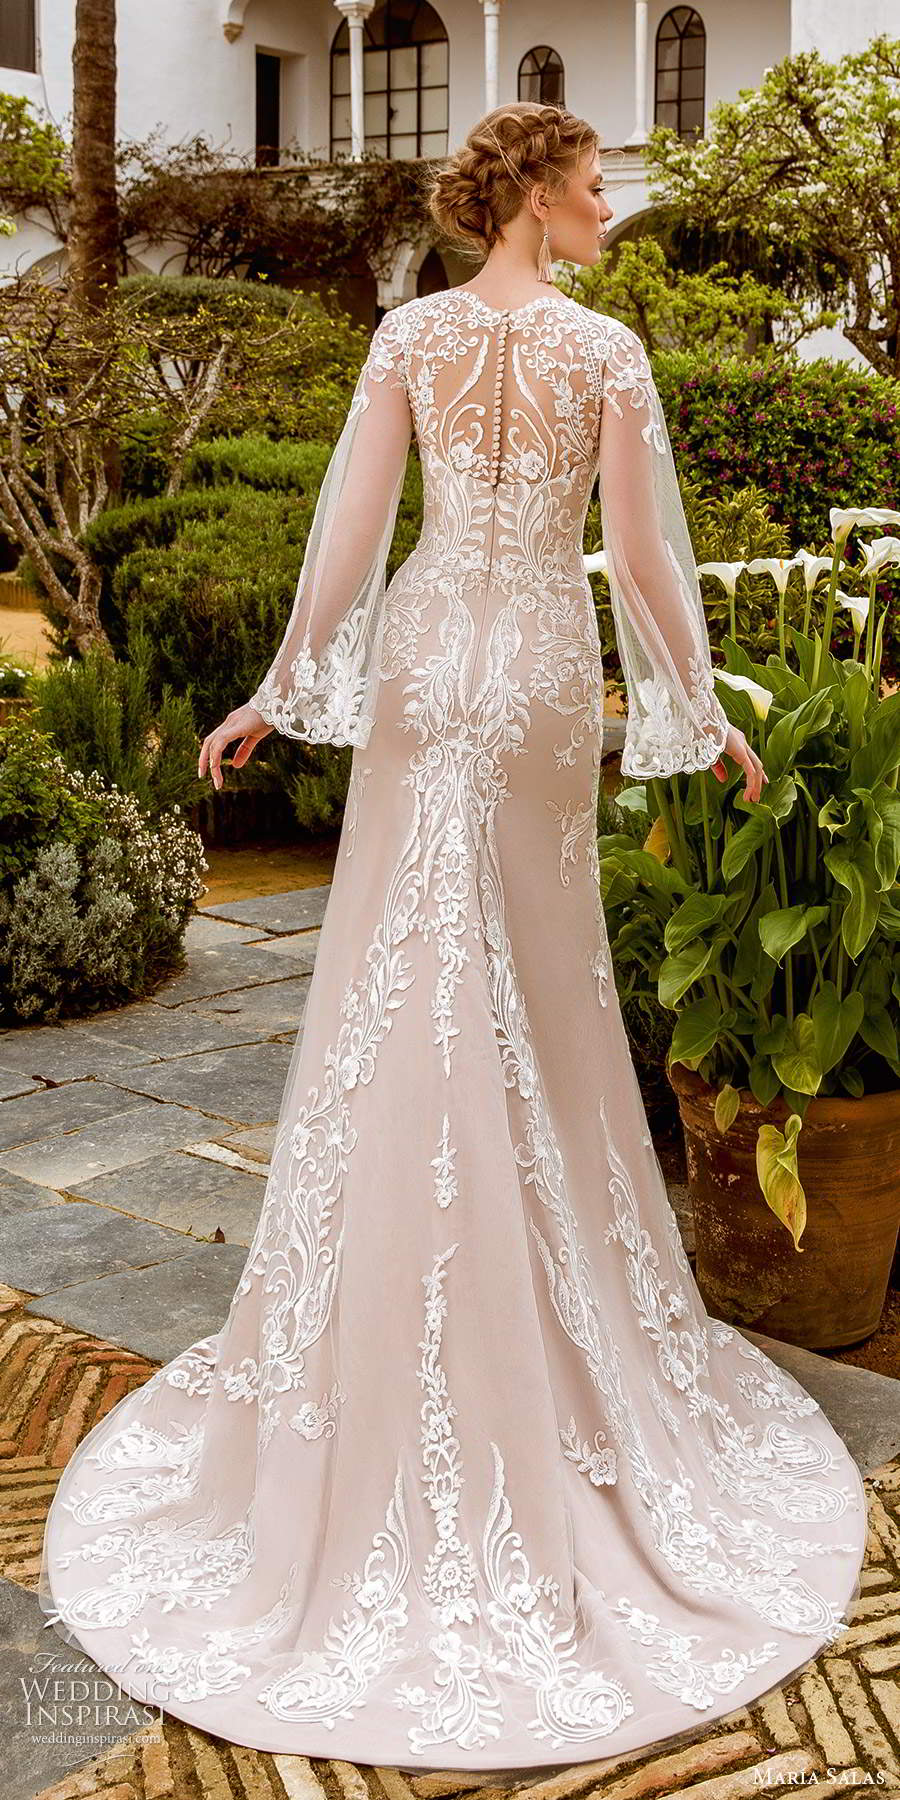 maria salas 2019 bridal flare sleeves plunging v neckline fully embellished lace fit flare a line wedding dress slit skirt chapel train (10) bv